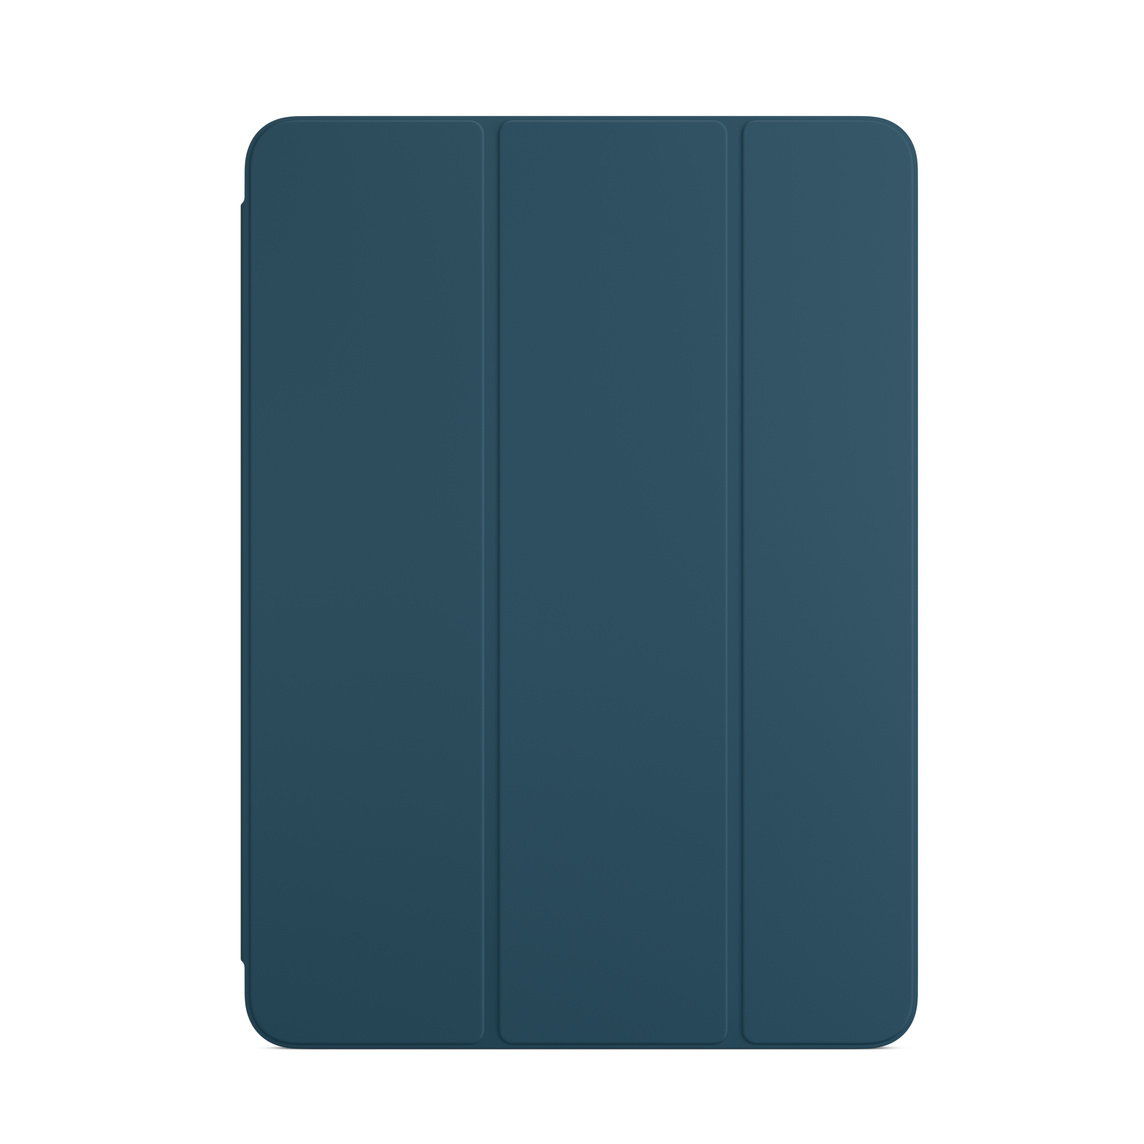 Smart Folio สำหรับ iPad Air สีมารีนบลู